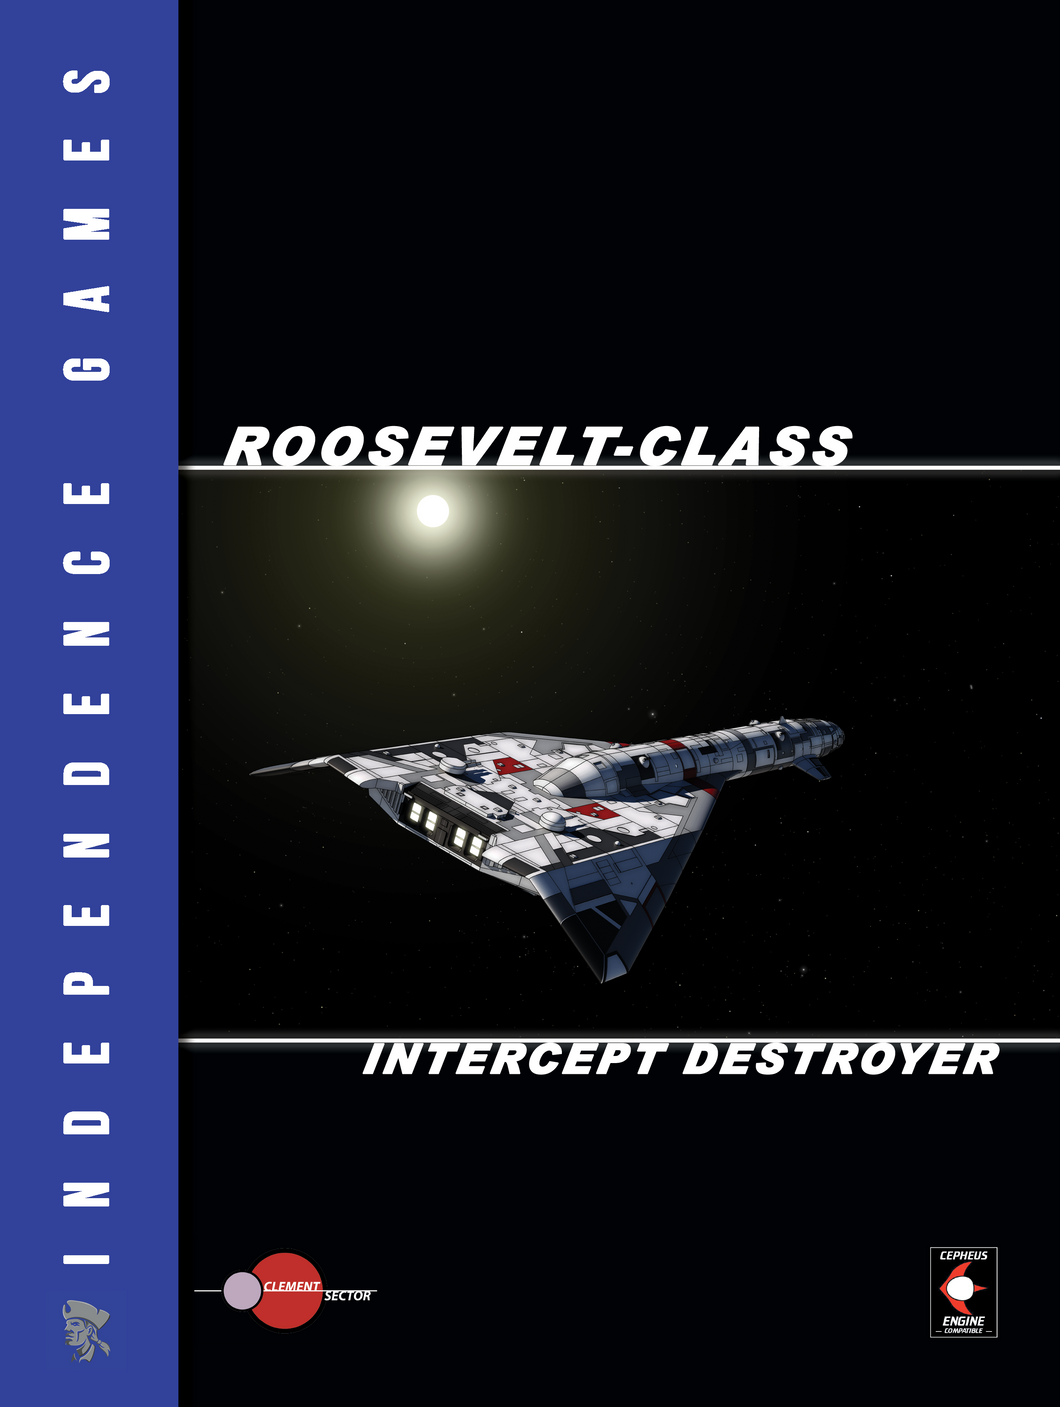 Roosevelt-class Intercept Destroyer